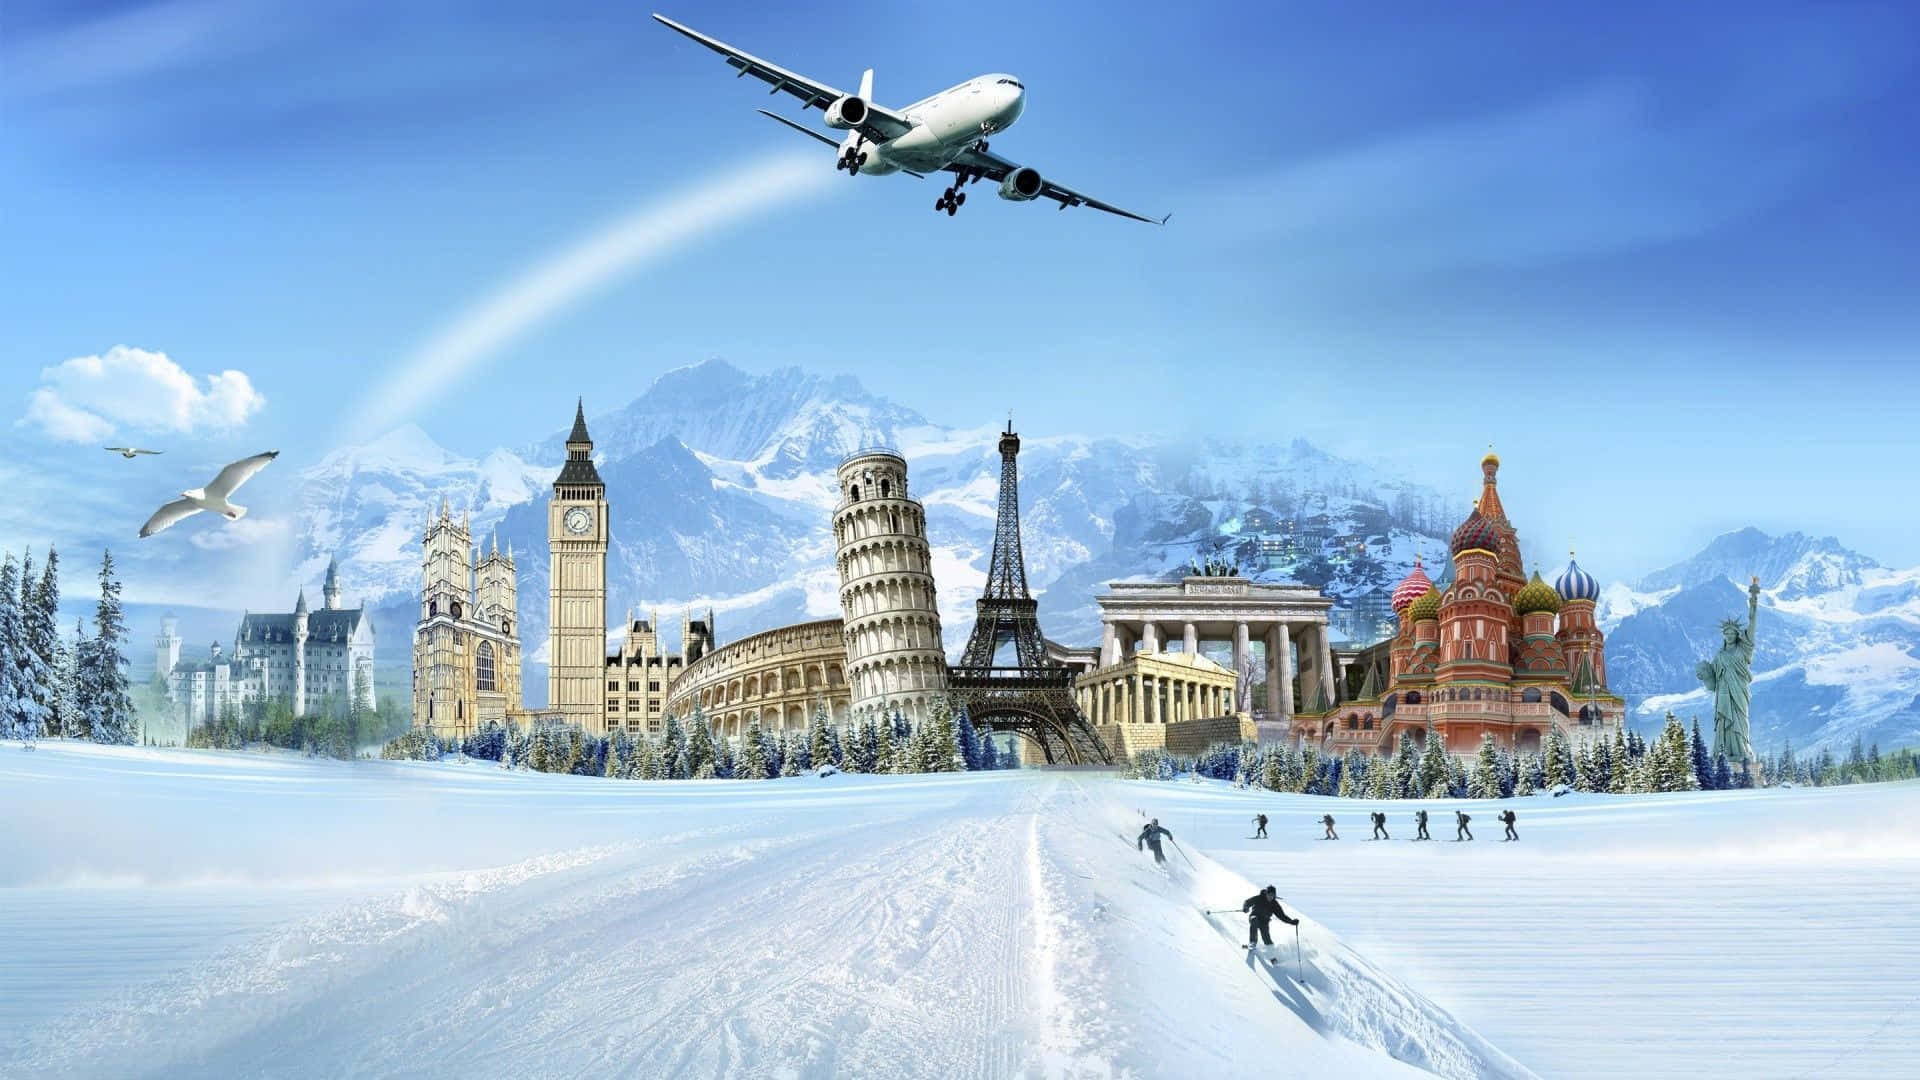 Plan your next great adventure with Best Travel Desktop Wallpaper